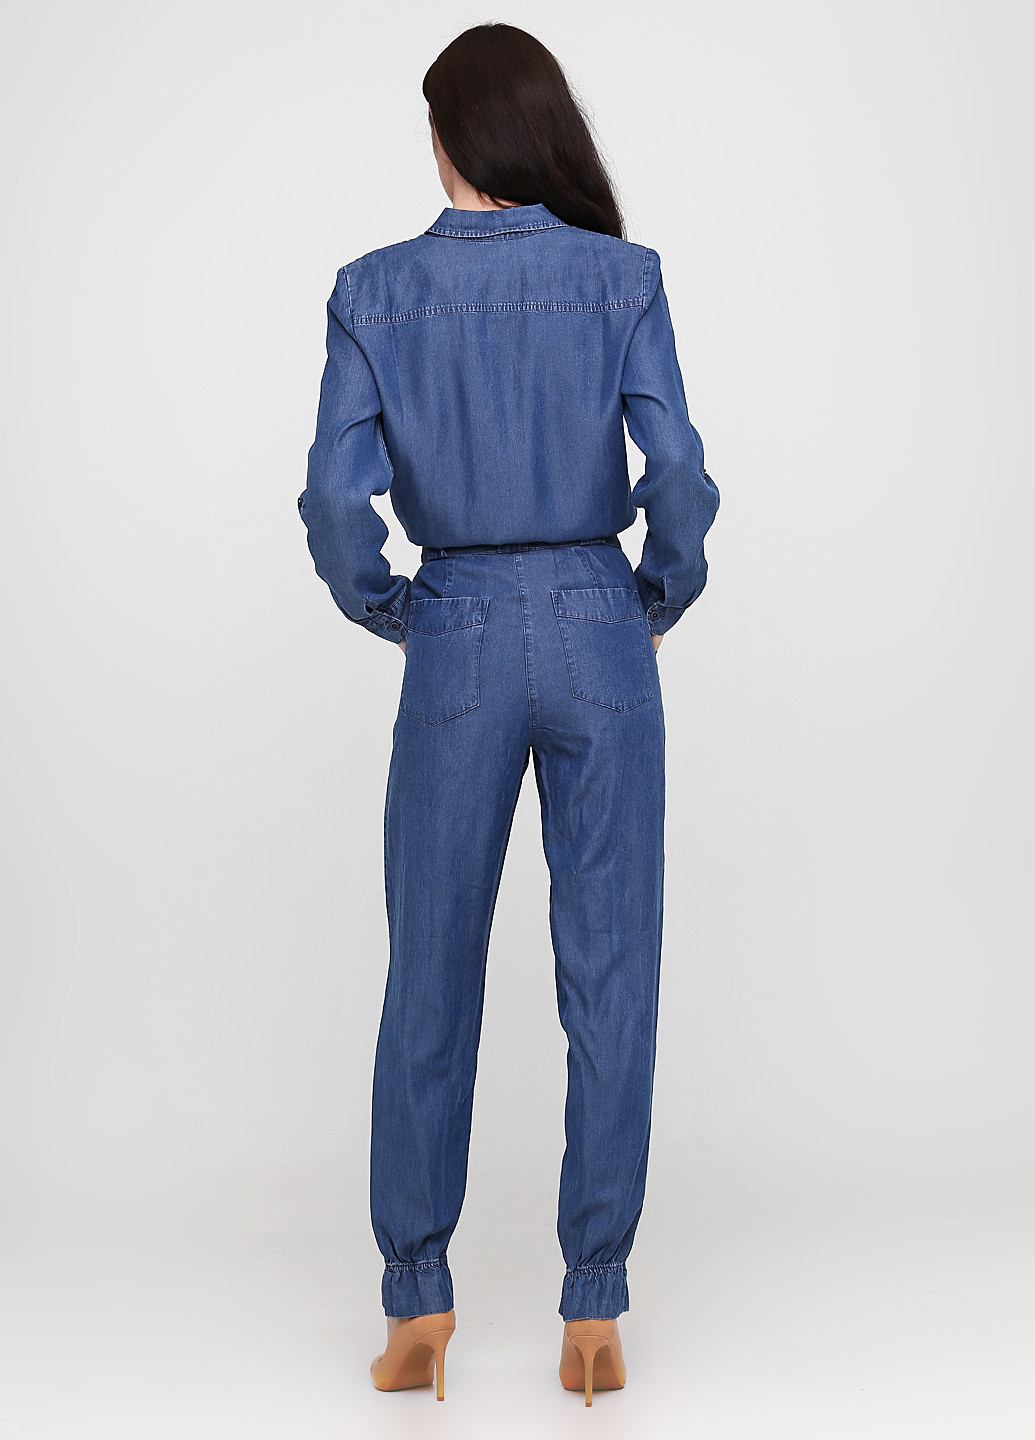 Комбінезон B.C. Best Connections комбінезон-брюки однотонний синій джинсовий тенсел